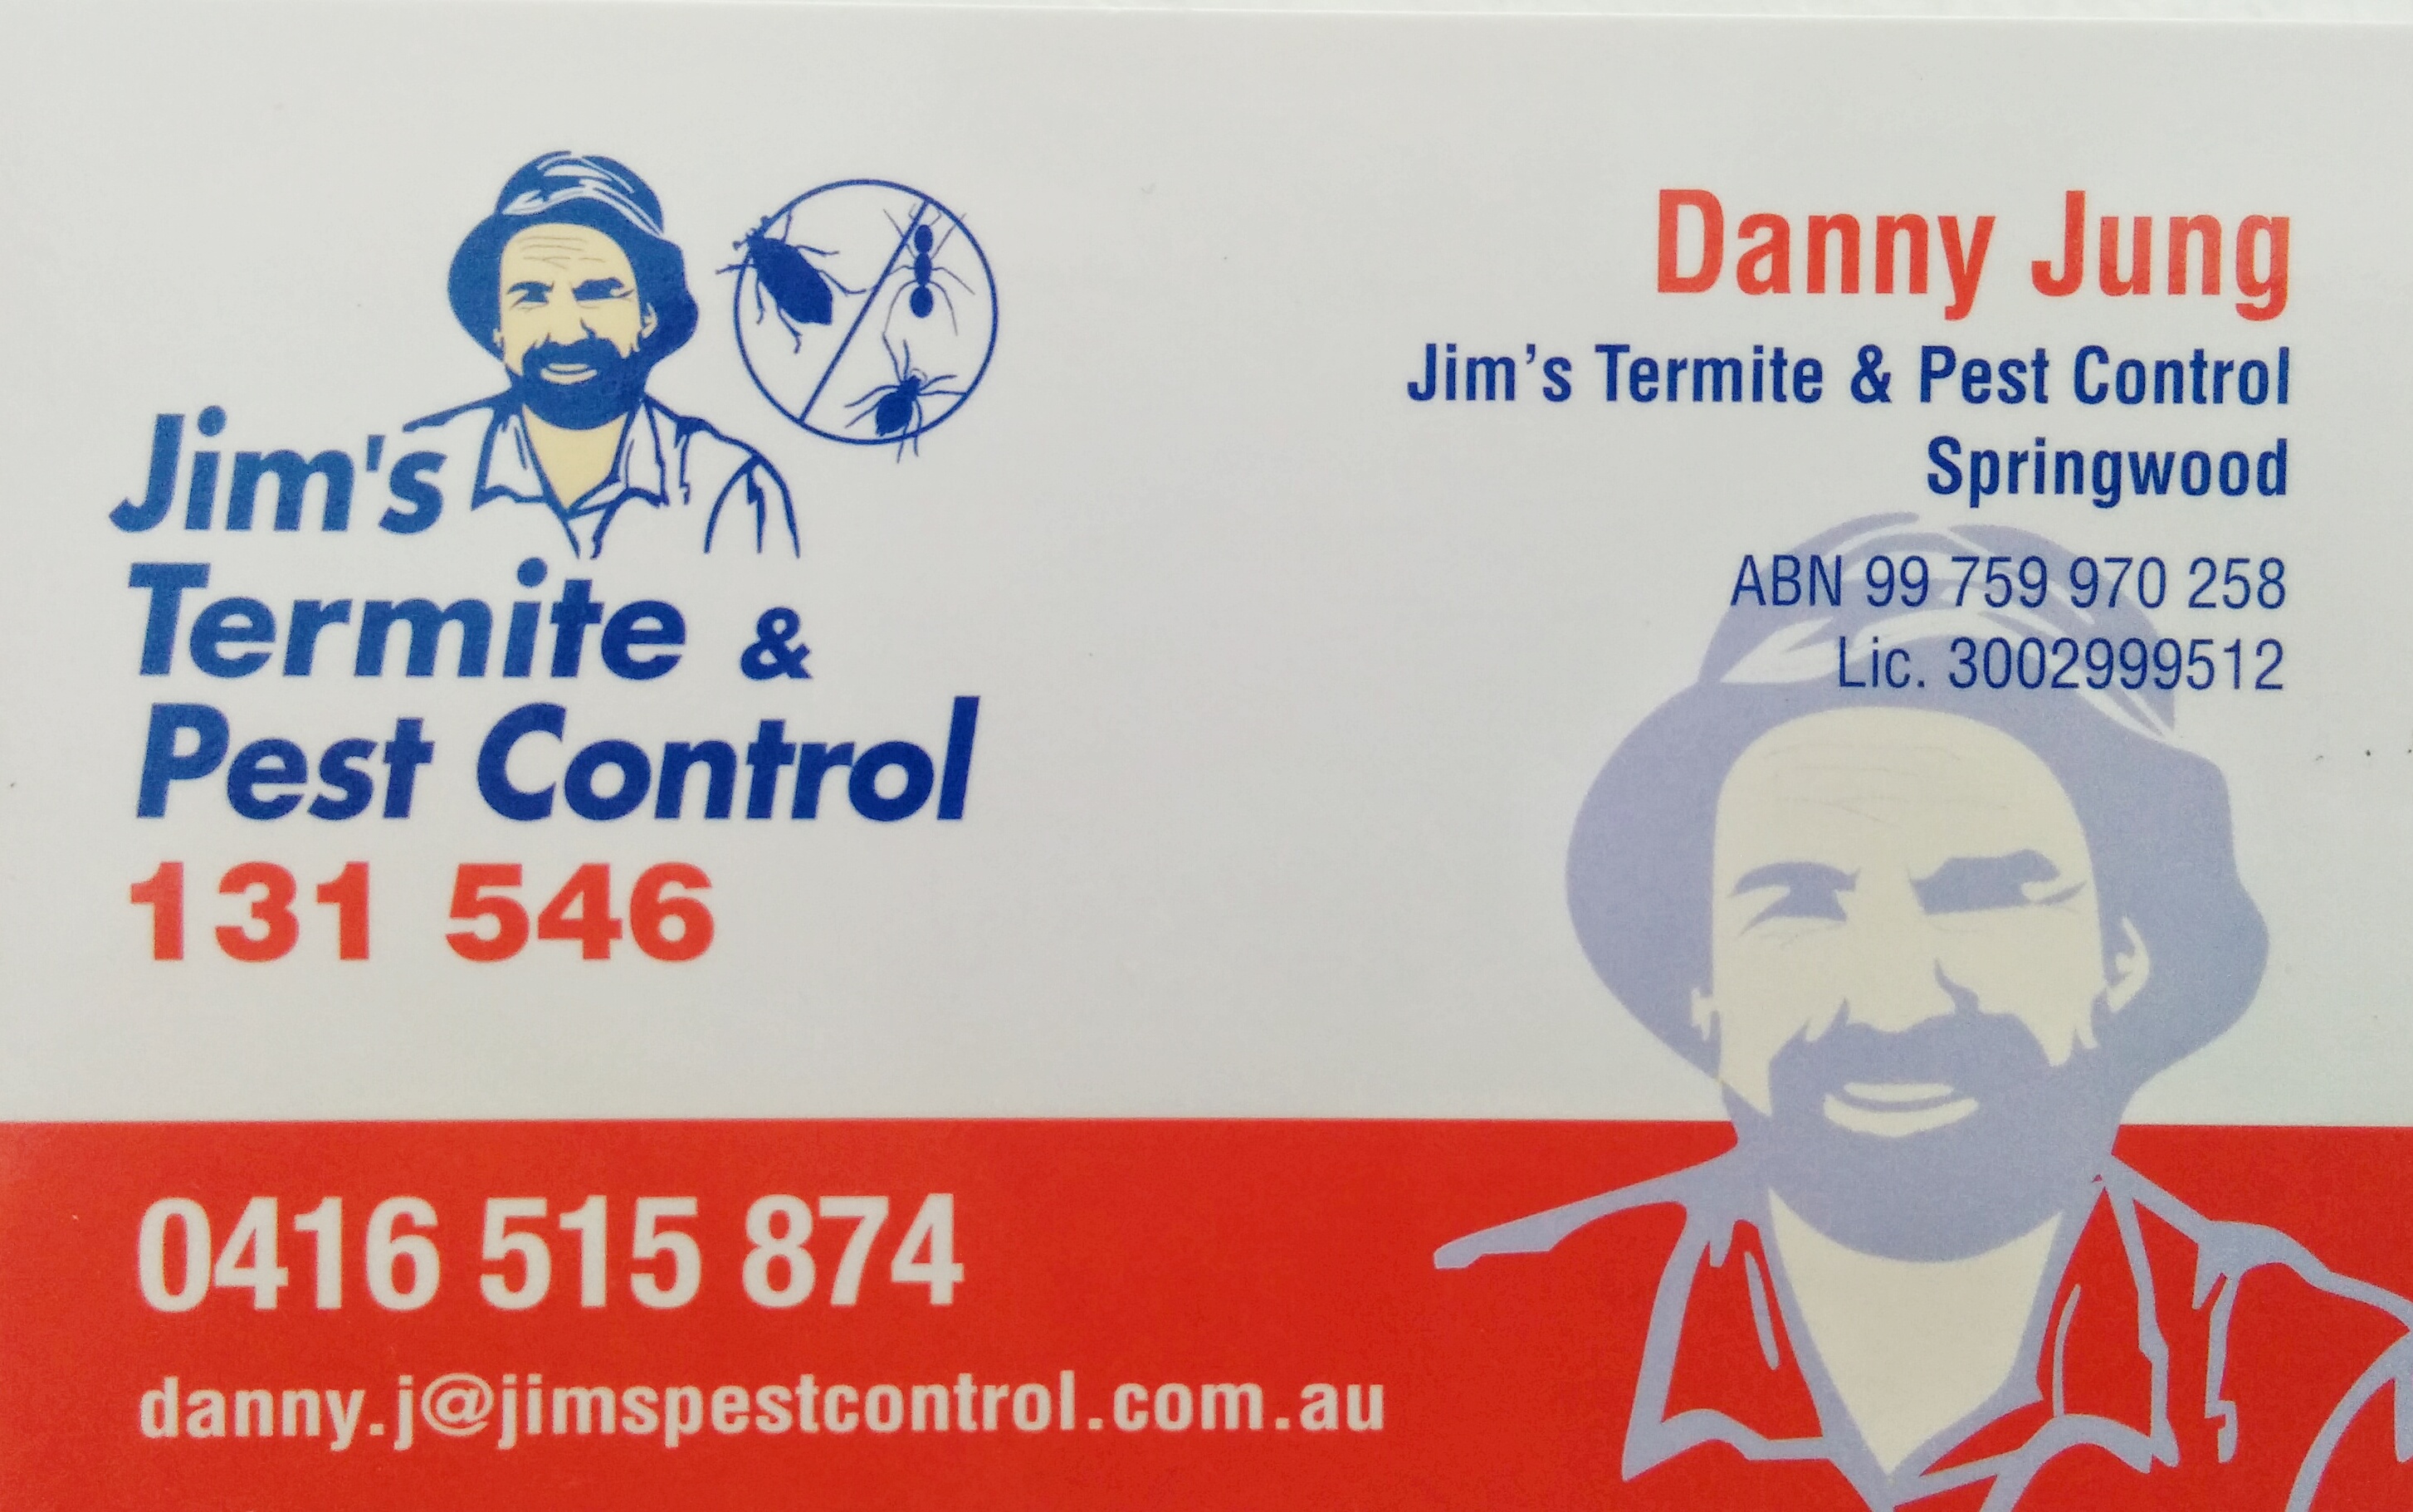 Jim's Termite & Pest Control